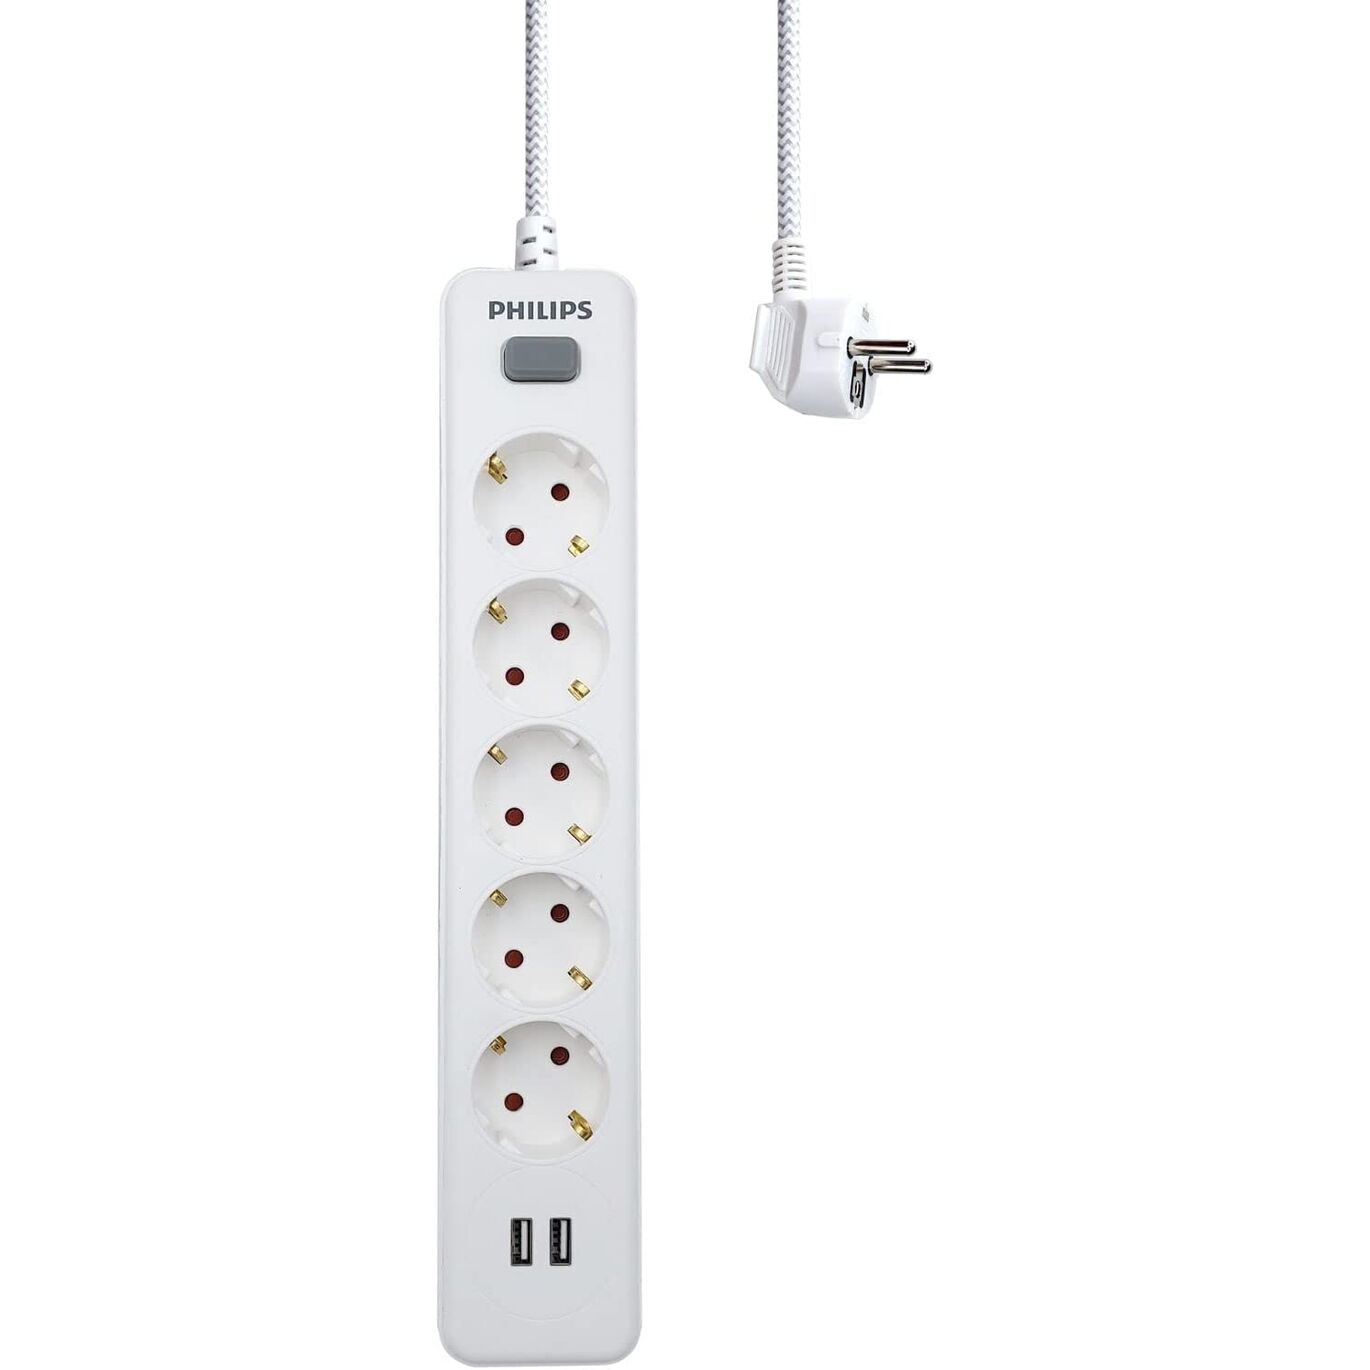 Regleta de 5 Enchufes Schuko y 2 Puertos USB de 2,4A, Interruptor Encendido/Apagado, Cable de Alimentacin Trenzado 1,5 Metros  - Color Blanco Philips